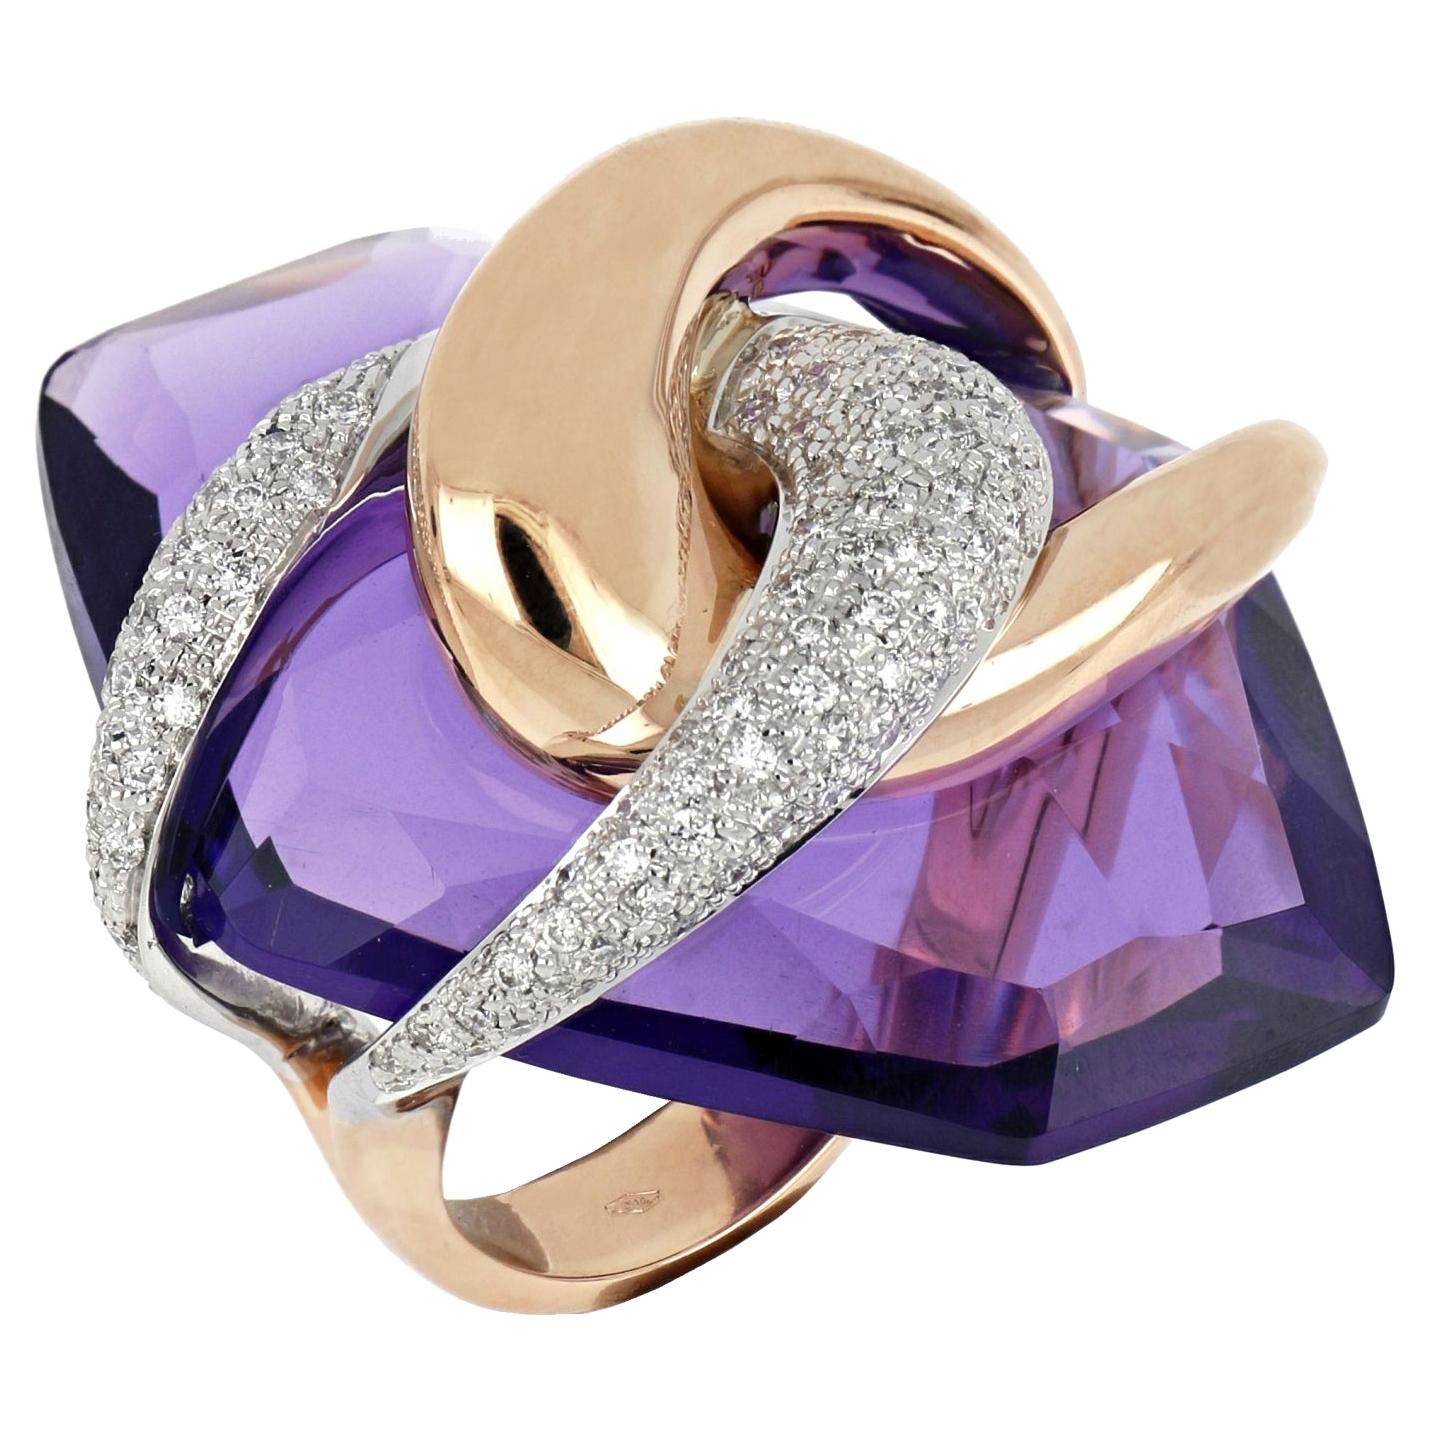 Grande bague en or blanc et rose 18 carats avec améthyste violette de lune enrichie de diamants